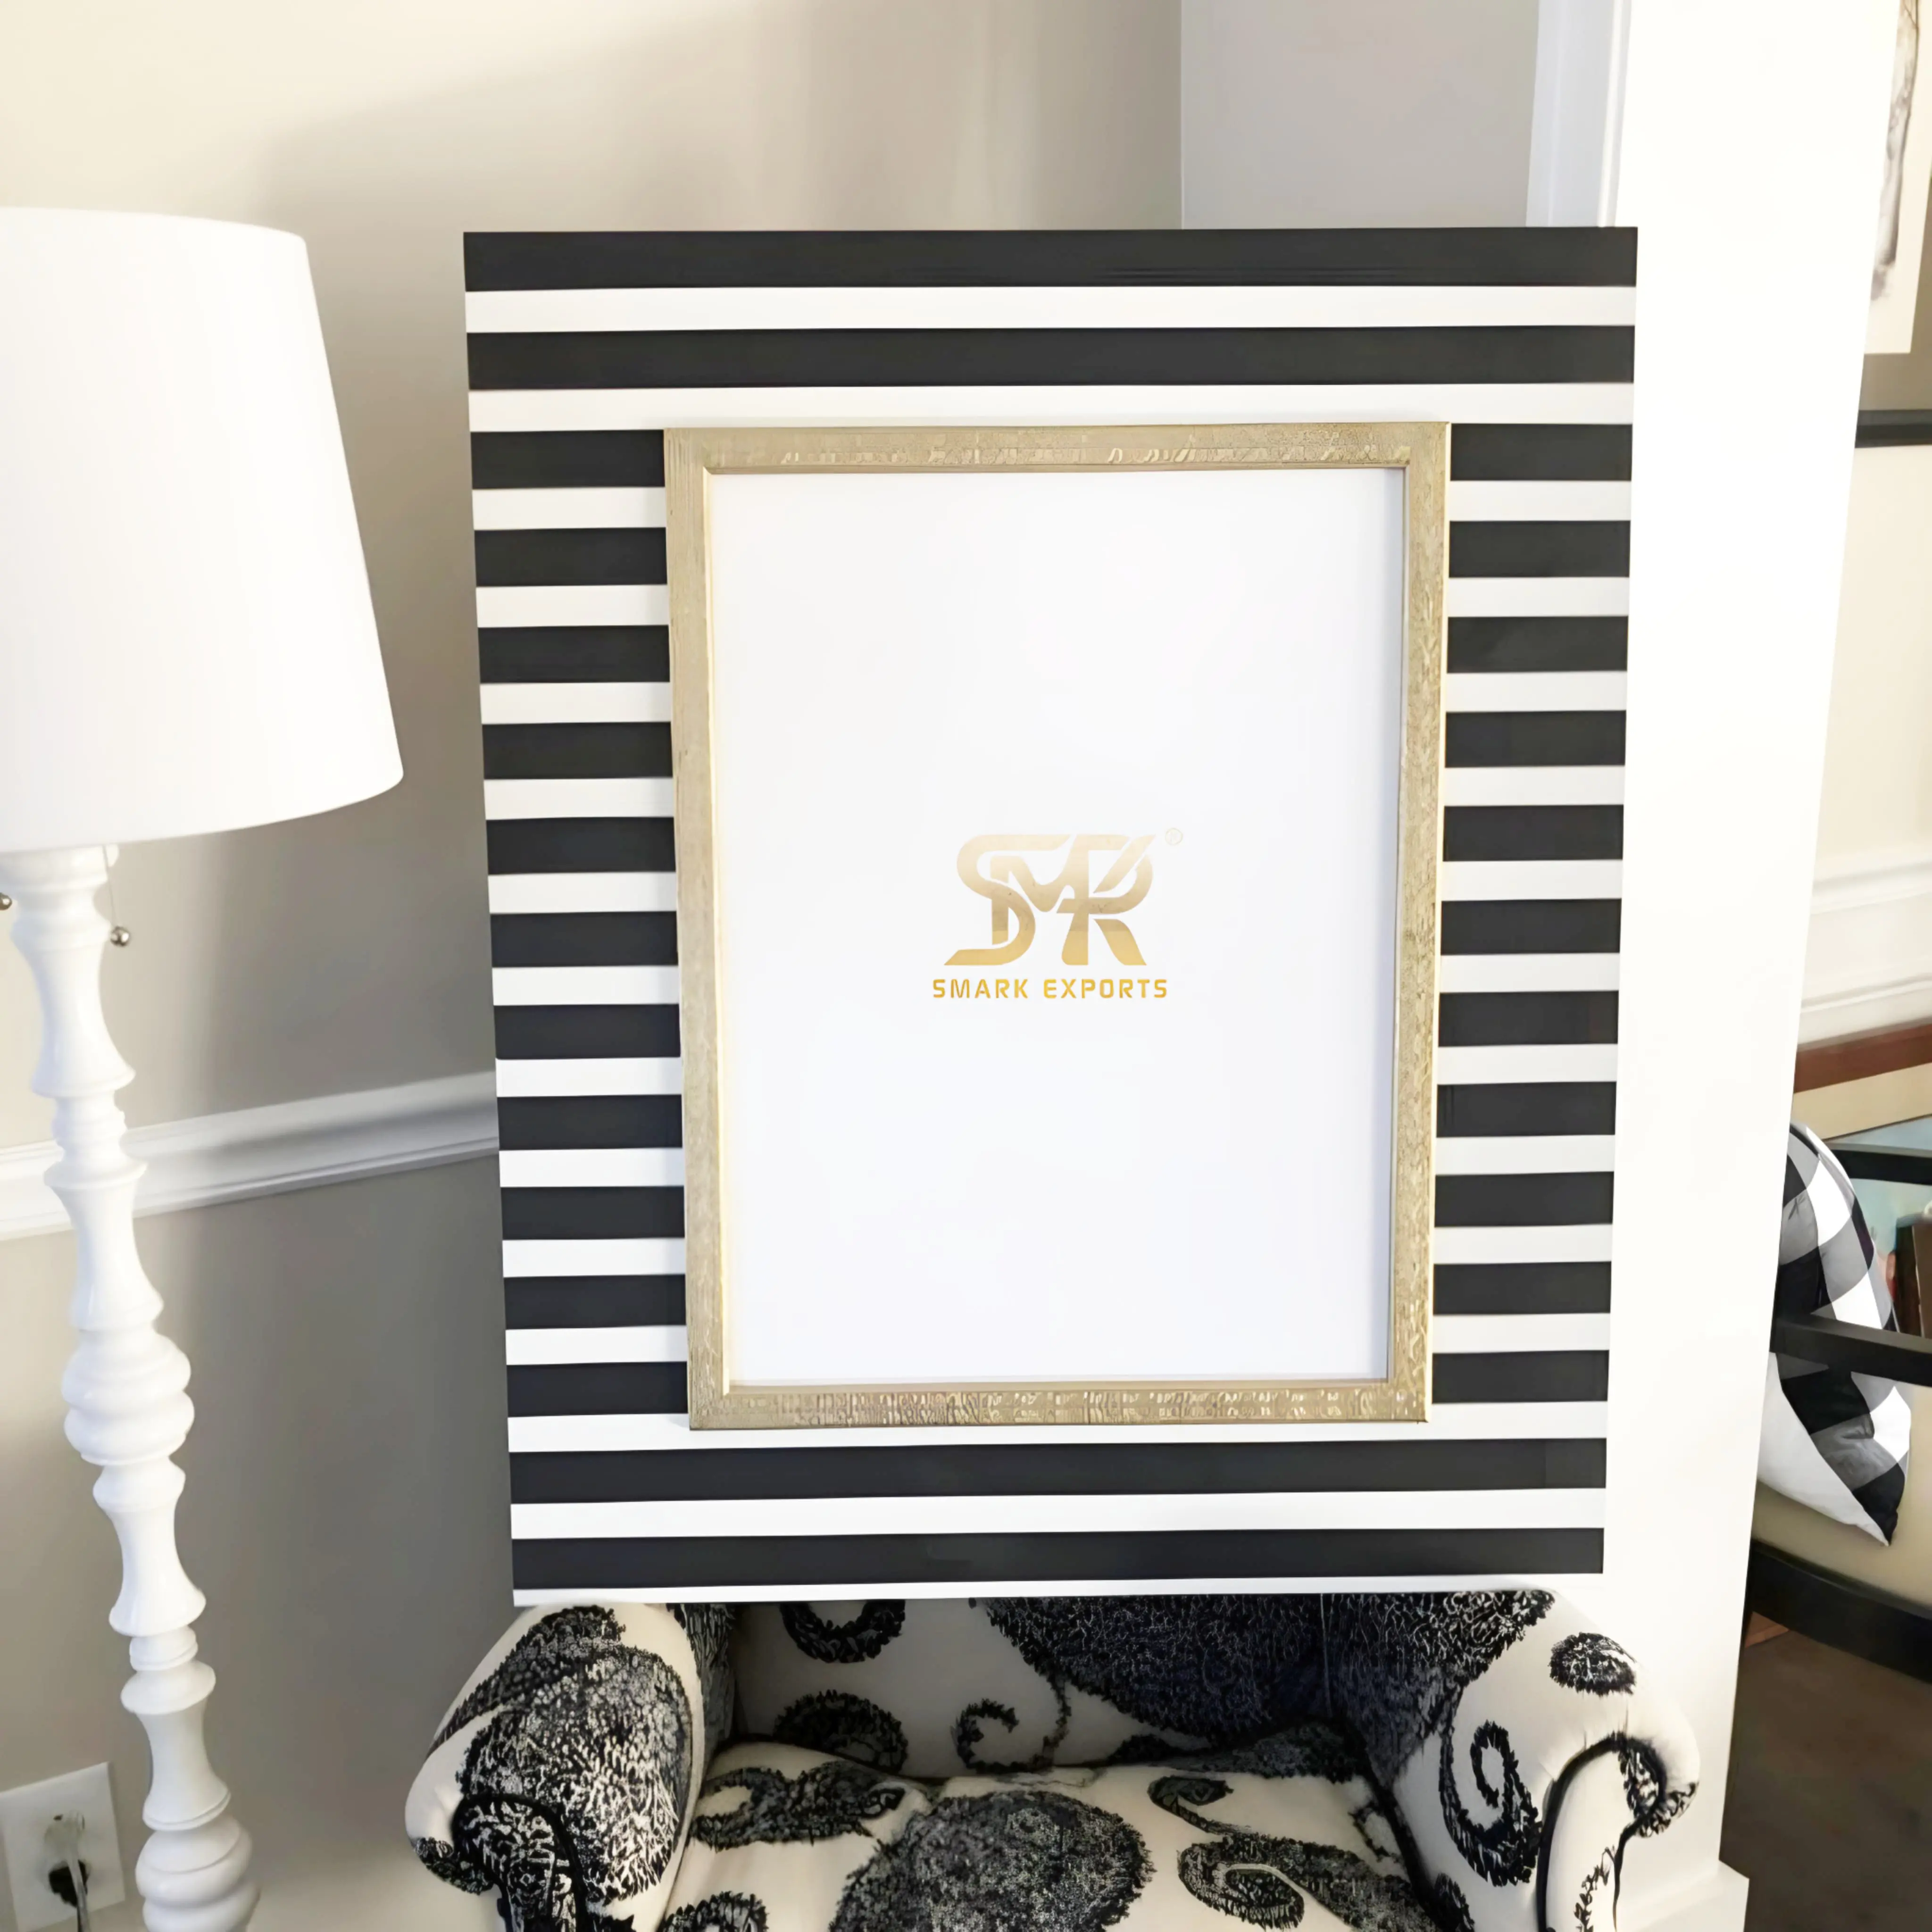 Customcraft khung ảnh nhựa trắng và đen: Độ tương phản thanh lịch cho trang trí nhà cá nhân và quà tặng đáng nhớ của smarkempports